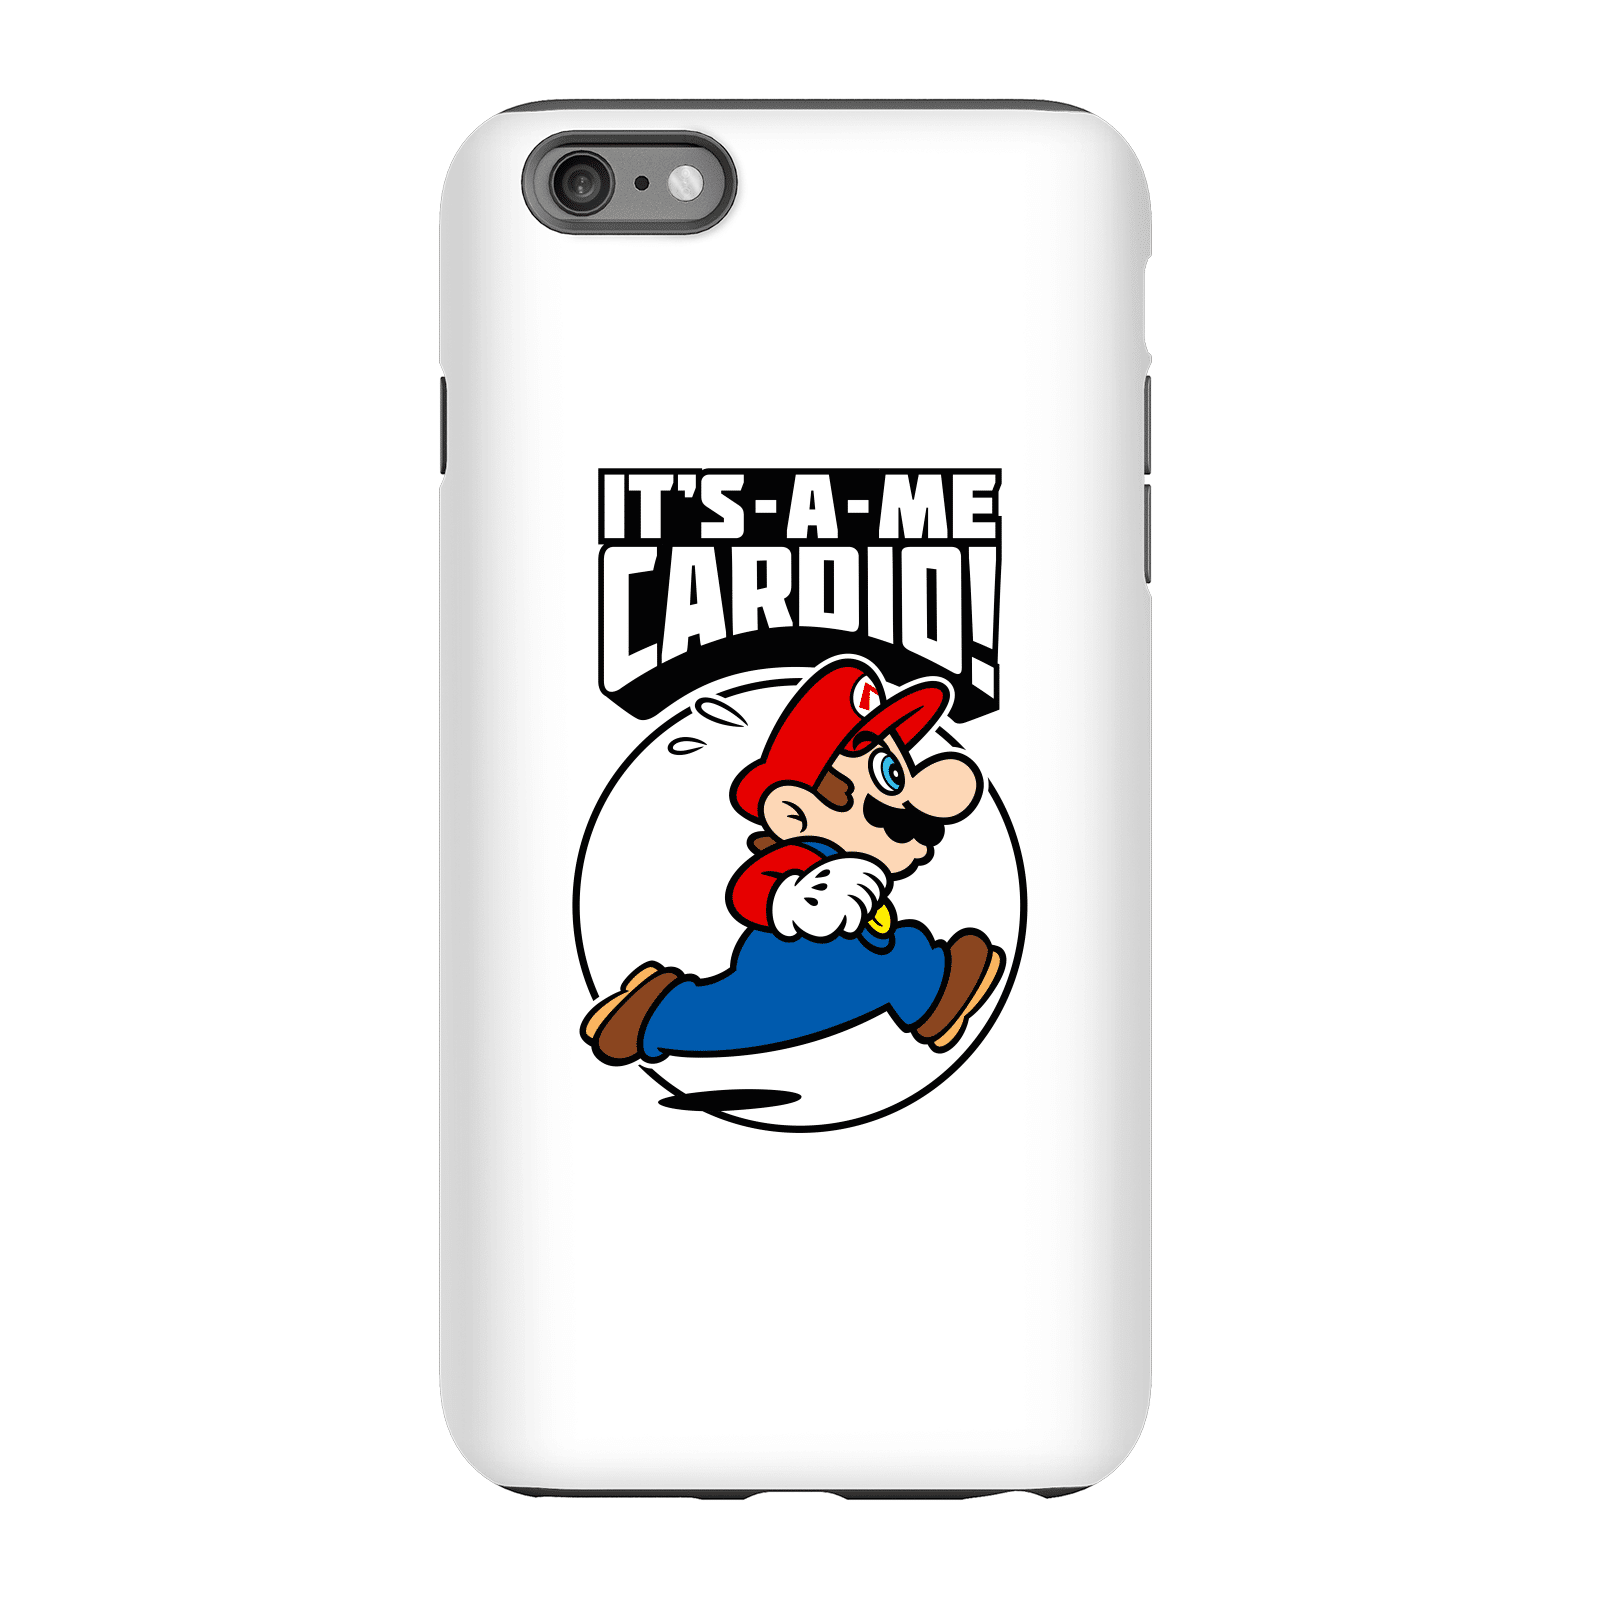 Nintendo Super Mario Cardio Phone Case - iPhone 6 Plus - Tough Case - Gloss